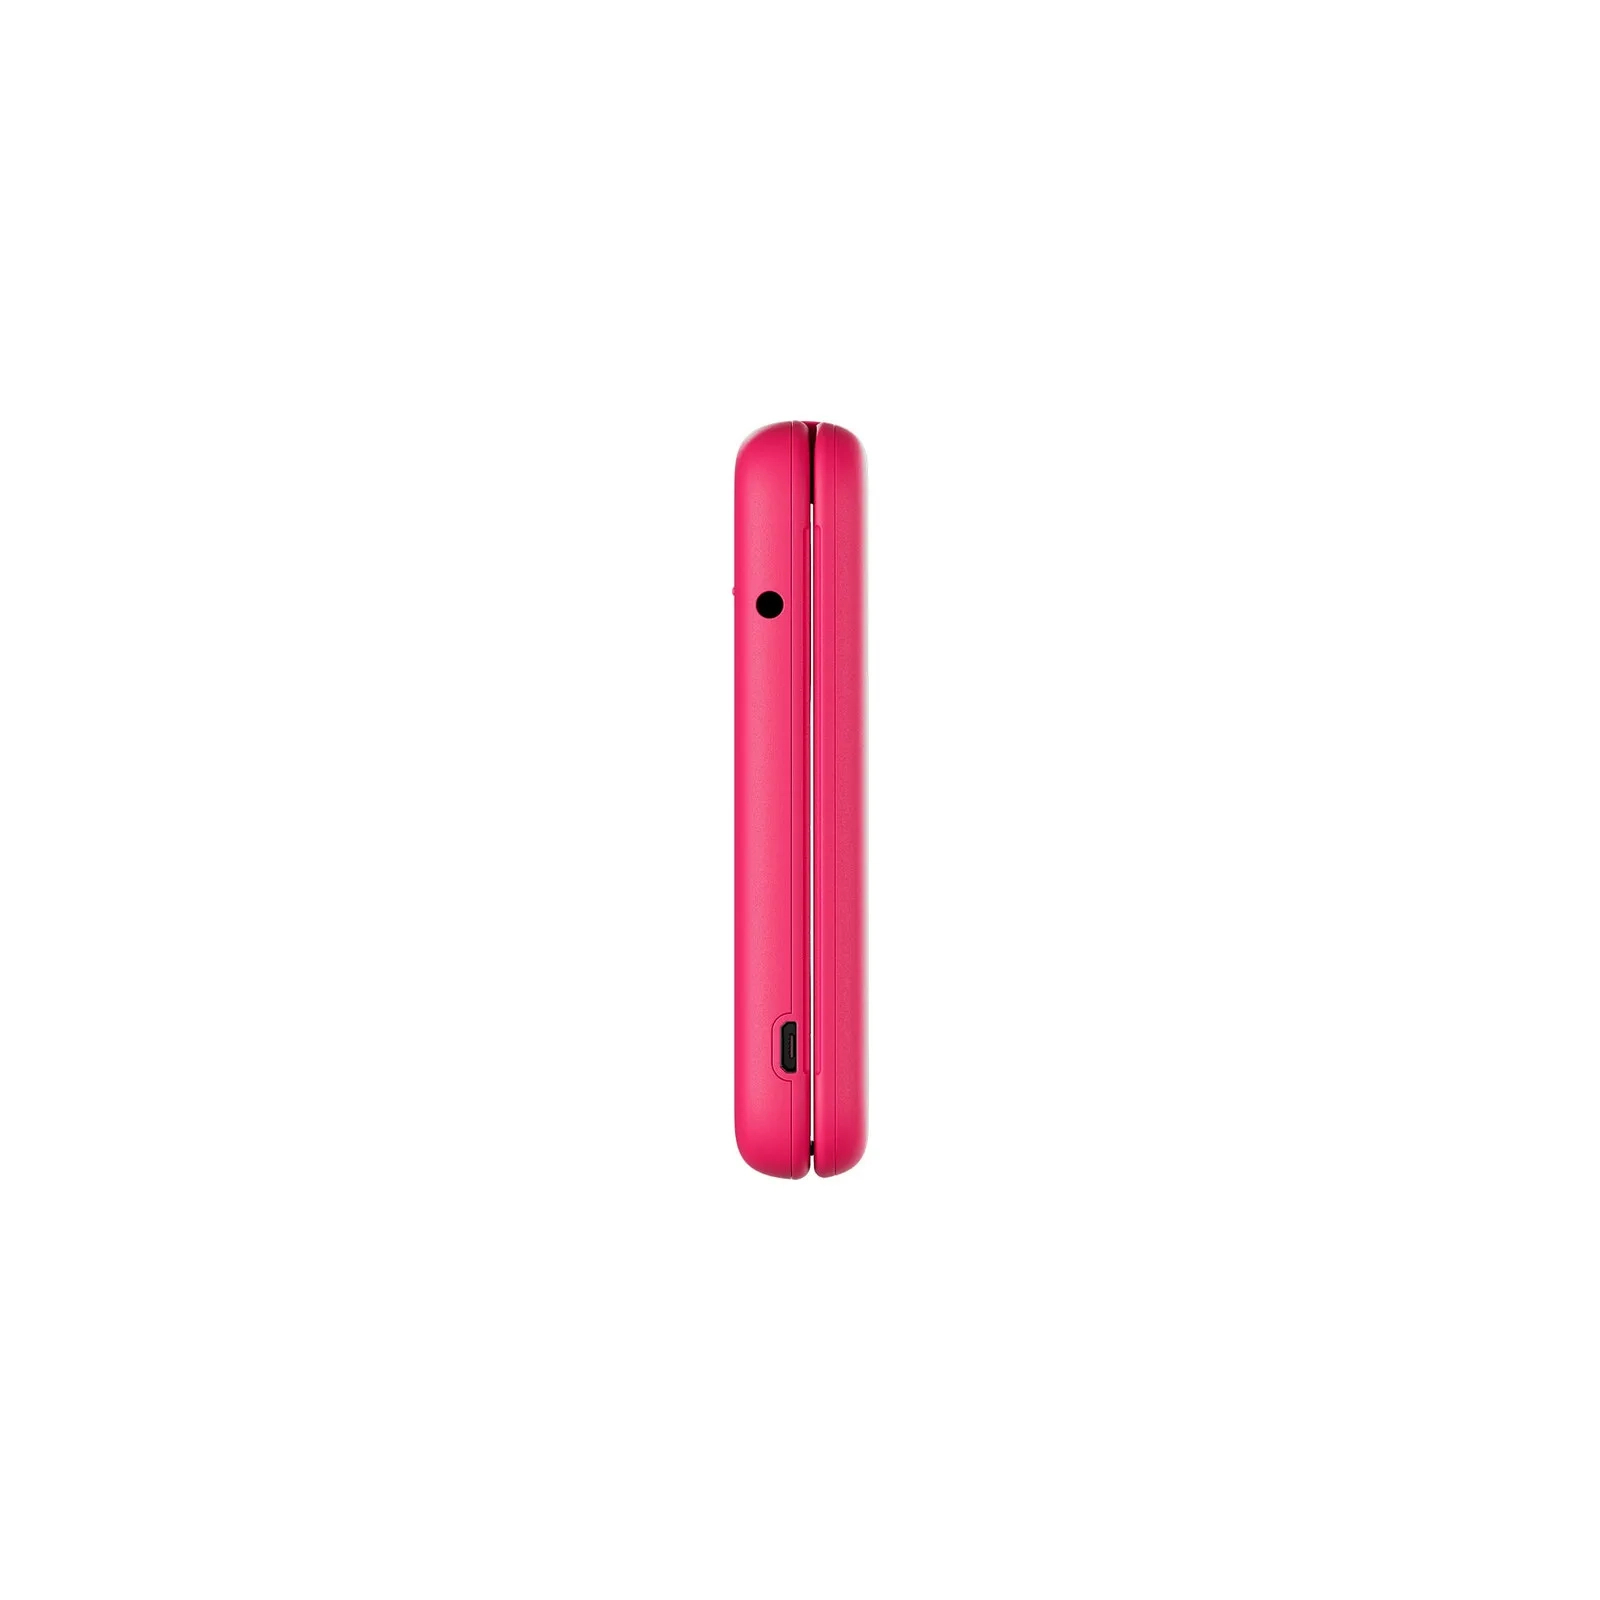 Мобильный телефон Nokia 2660 Flip Red изображение 4